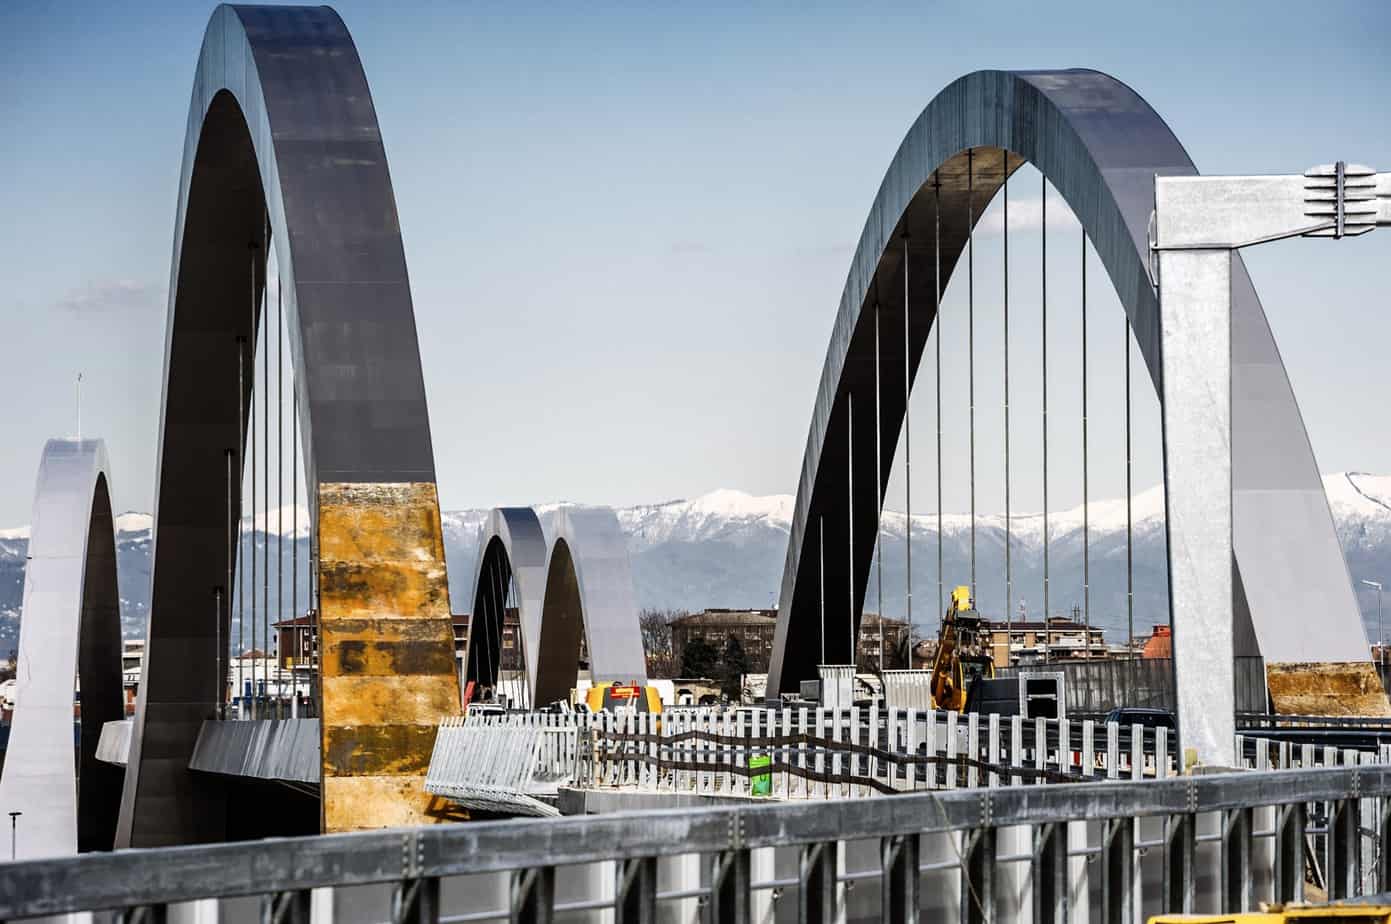 Il ponte ad arco di scavalco dell’Autostrada A4 Torino-Venezia con luce 190 m completamente realizzato in acciaio